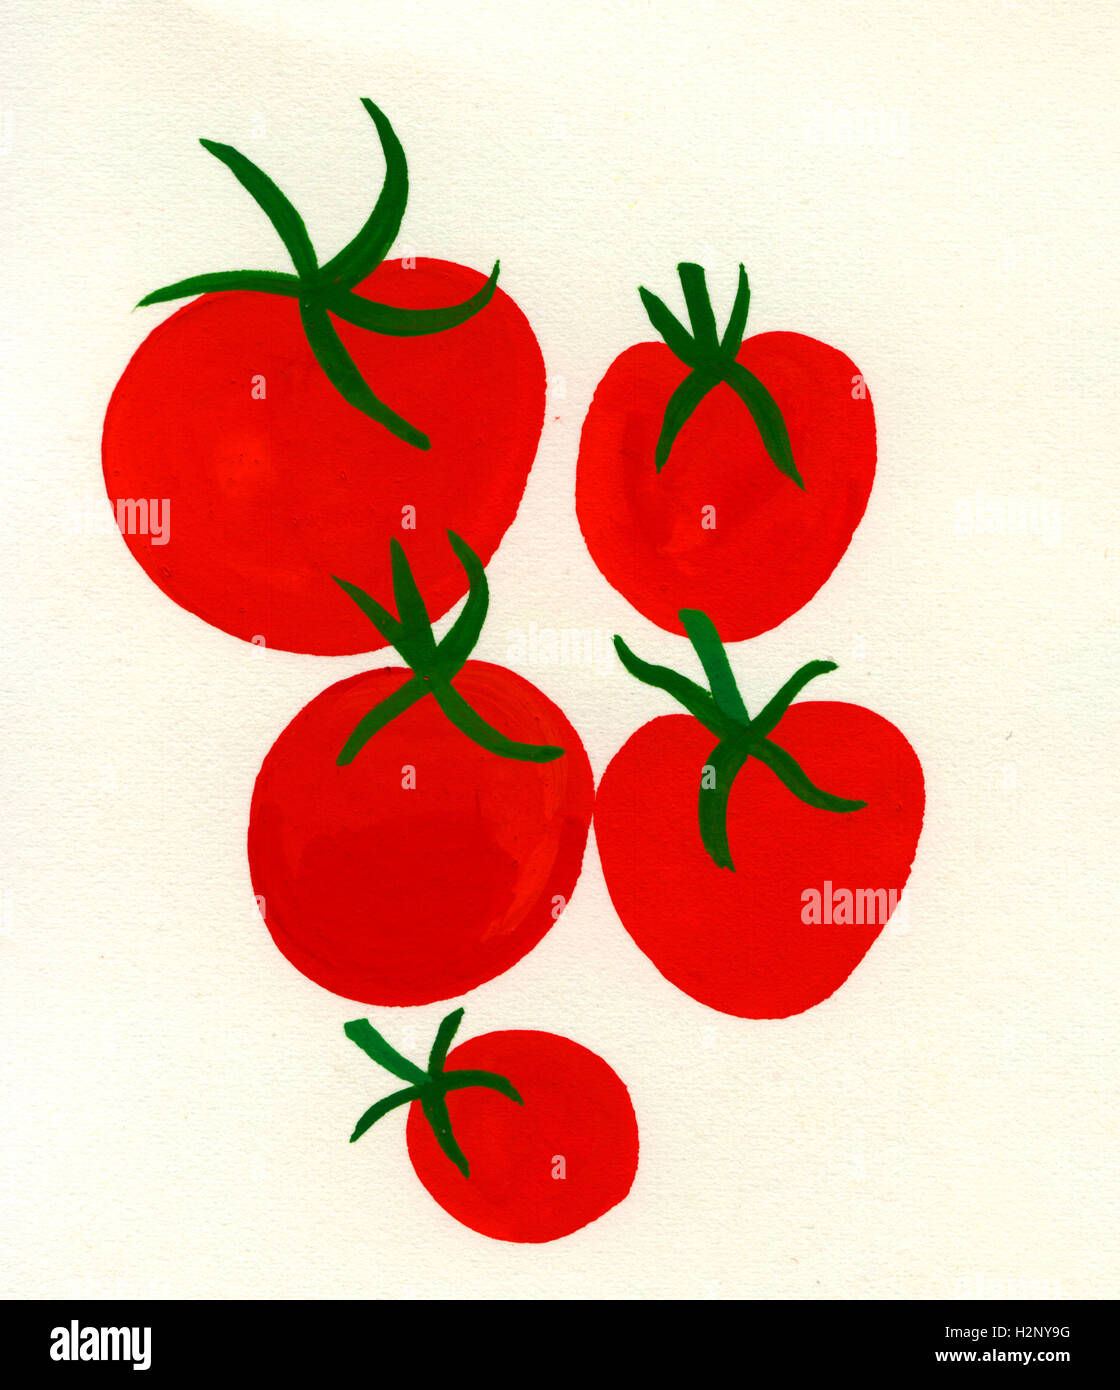 Tomates sur fond blanc Banque D'Images